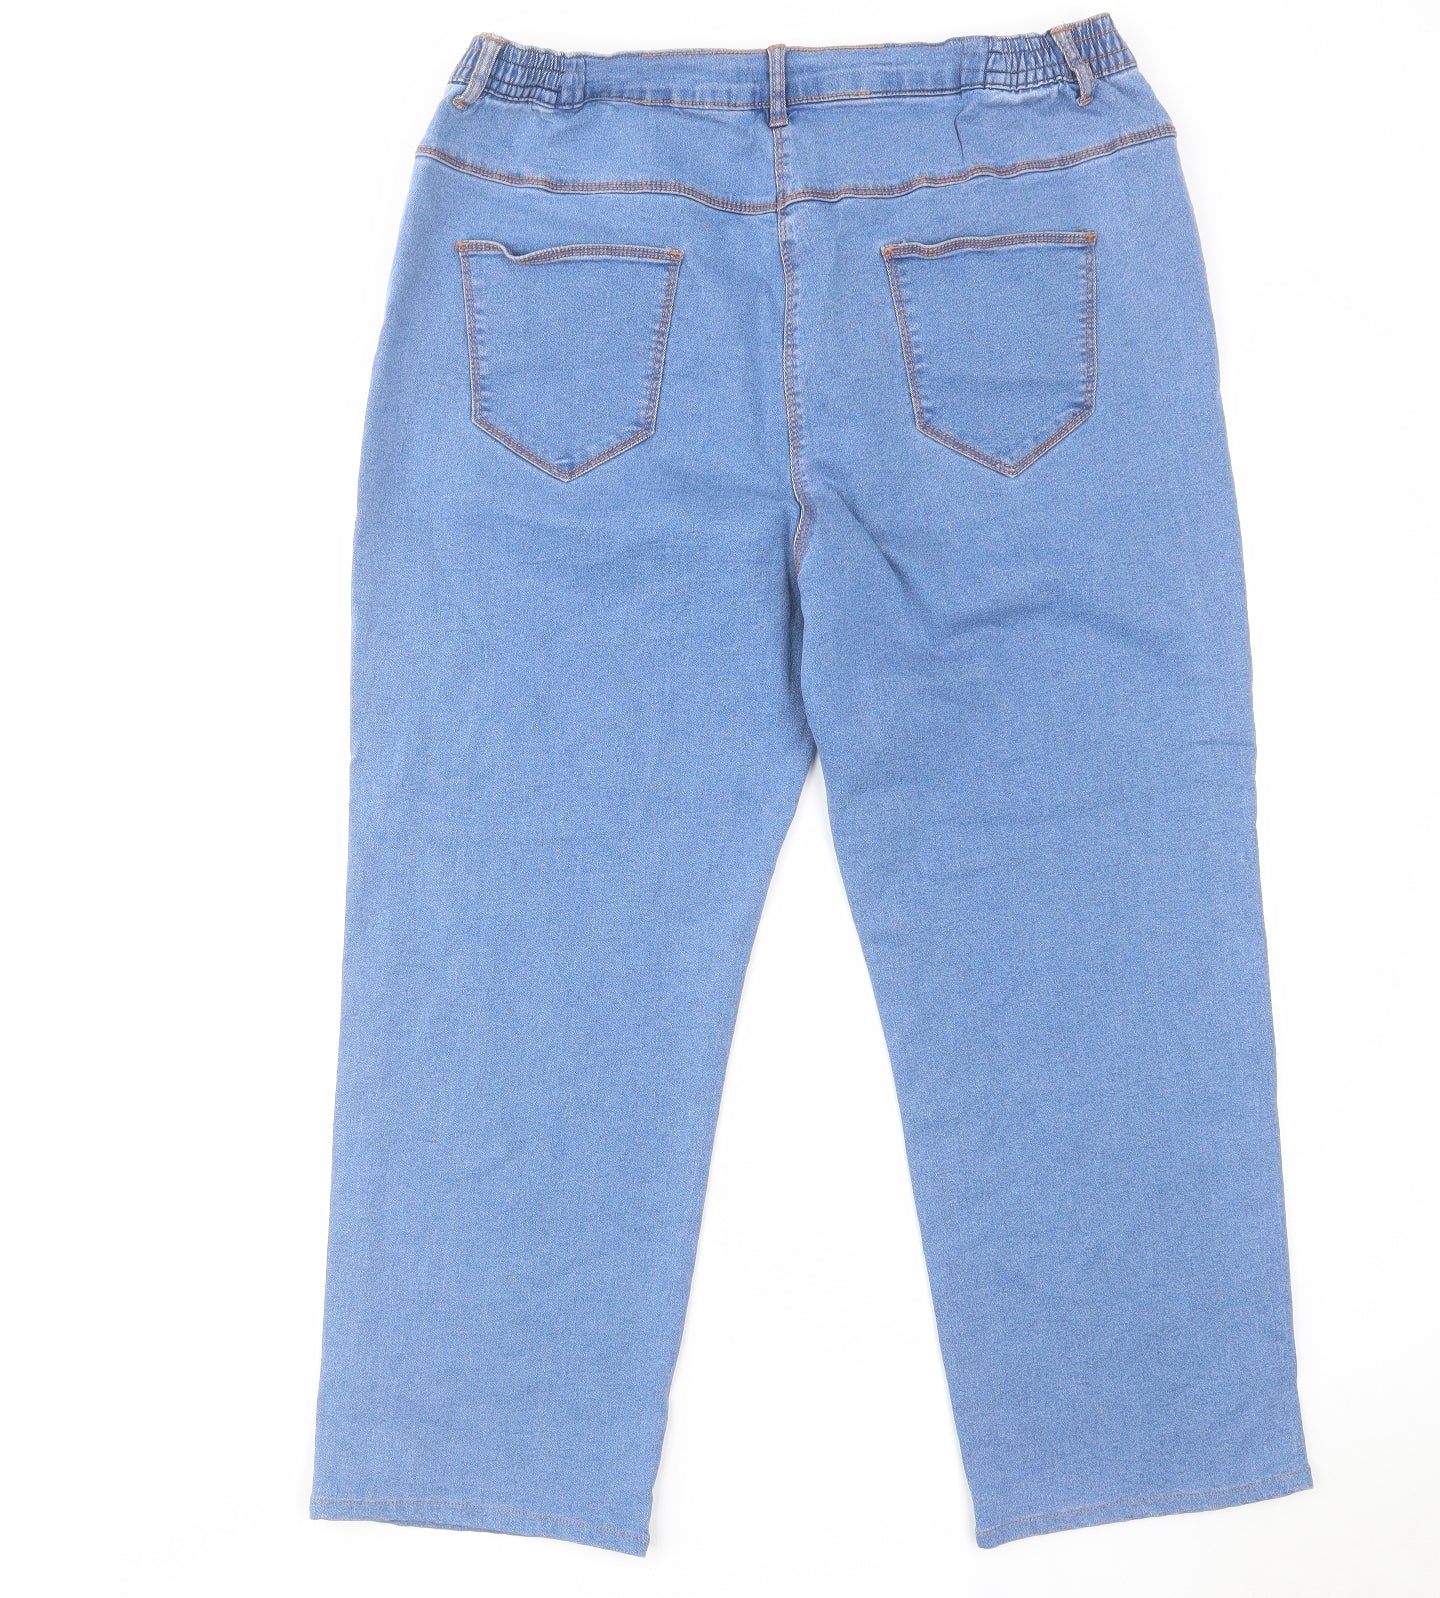 Bonmarché Womens Blue Cotton Capri Jeans Size 20 L26 in Regular Zip